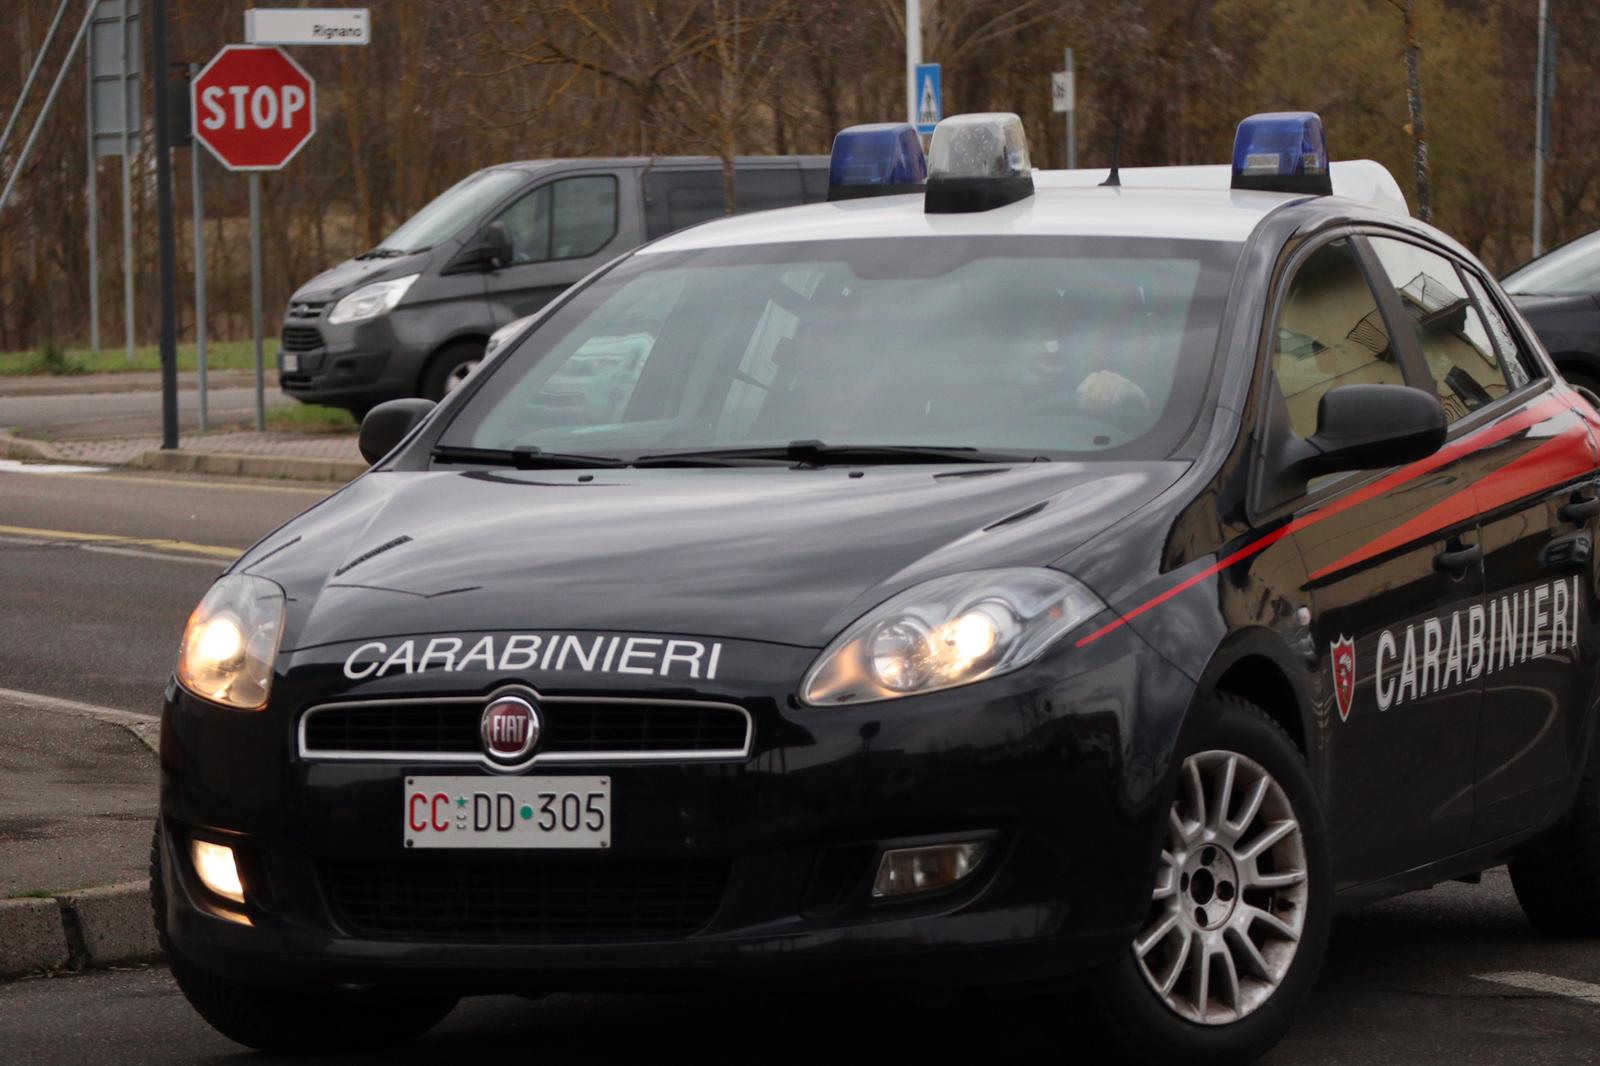 Comando Provinciale Carabinieri di Arezzo, denunce e controlli nel Valdarno Aretino: denunciate quattro persone